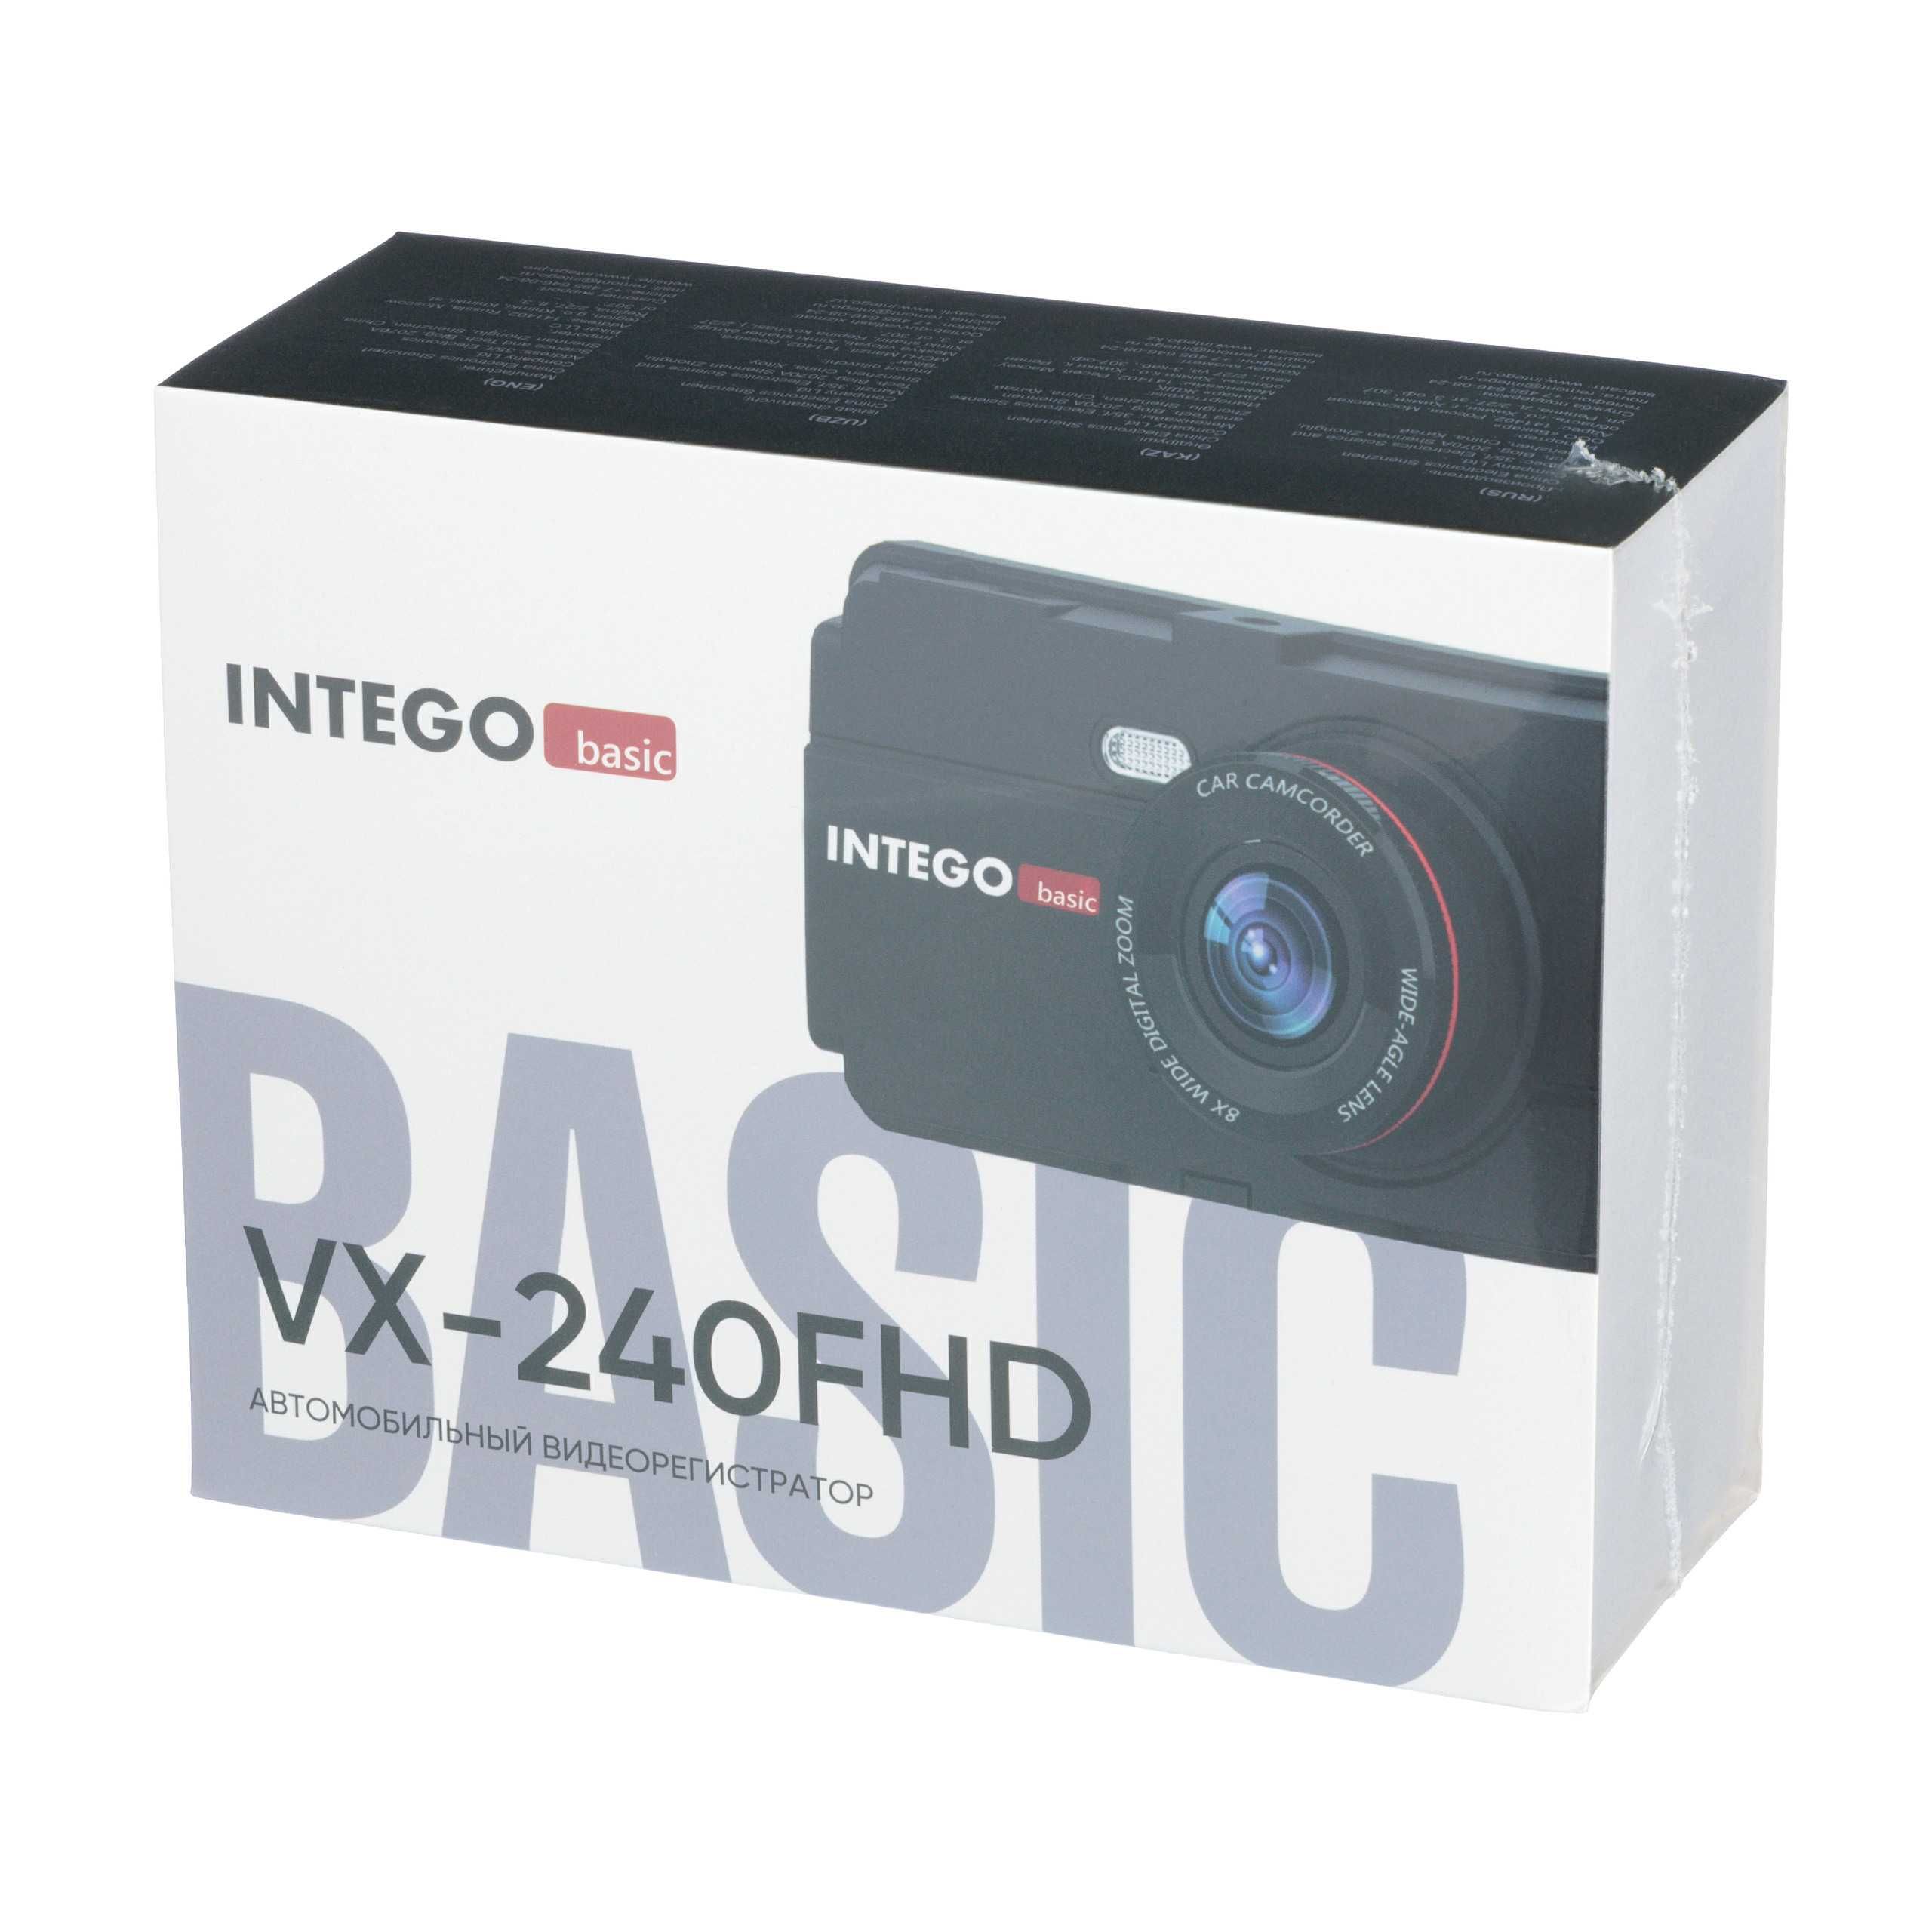 INTEGO VX-240FHD Видеорегистратор с картой памяти 32GB в комплекте